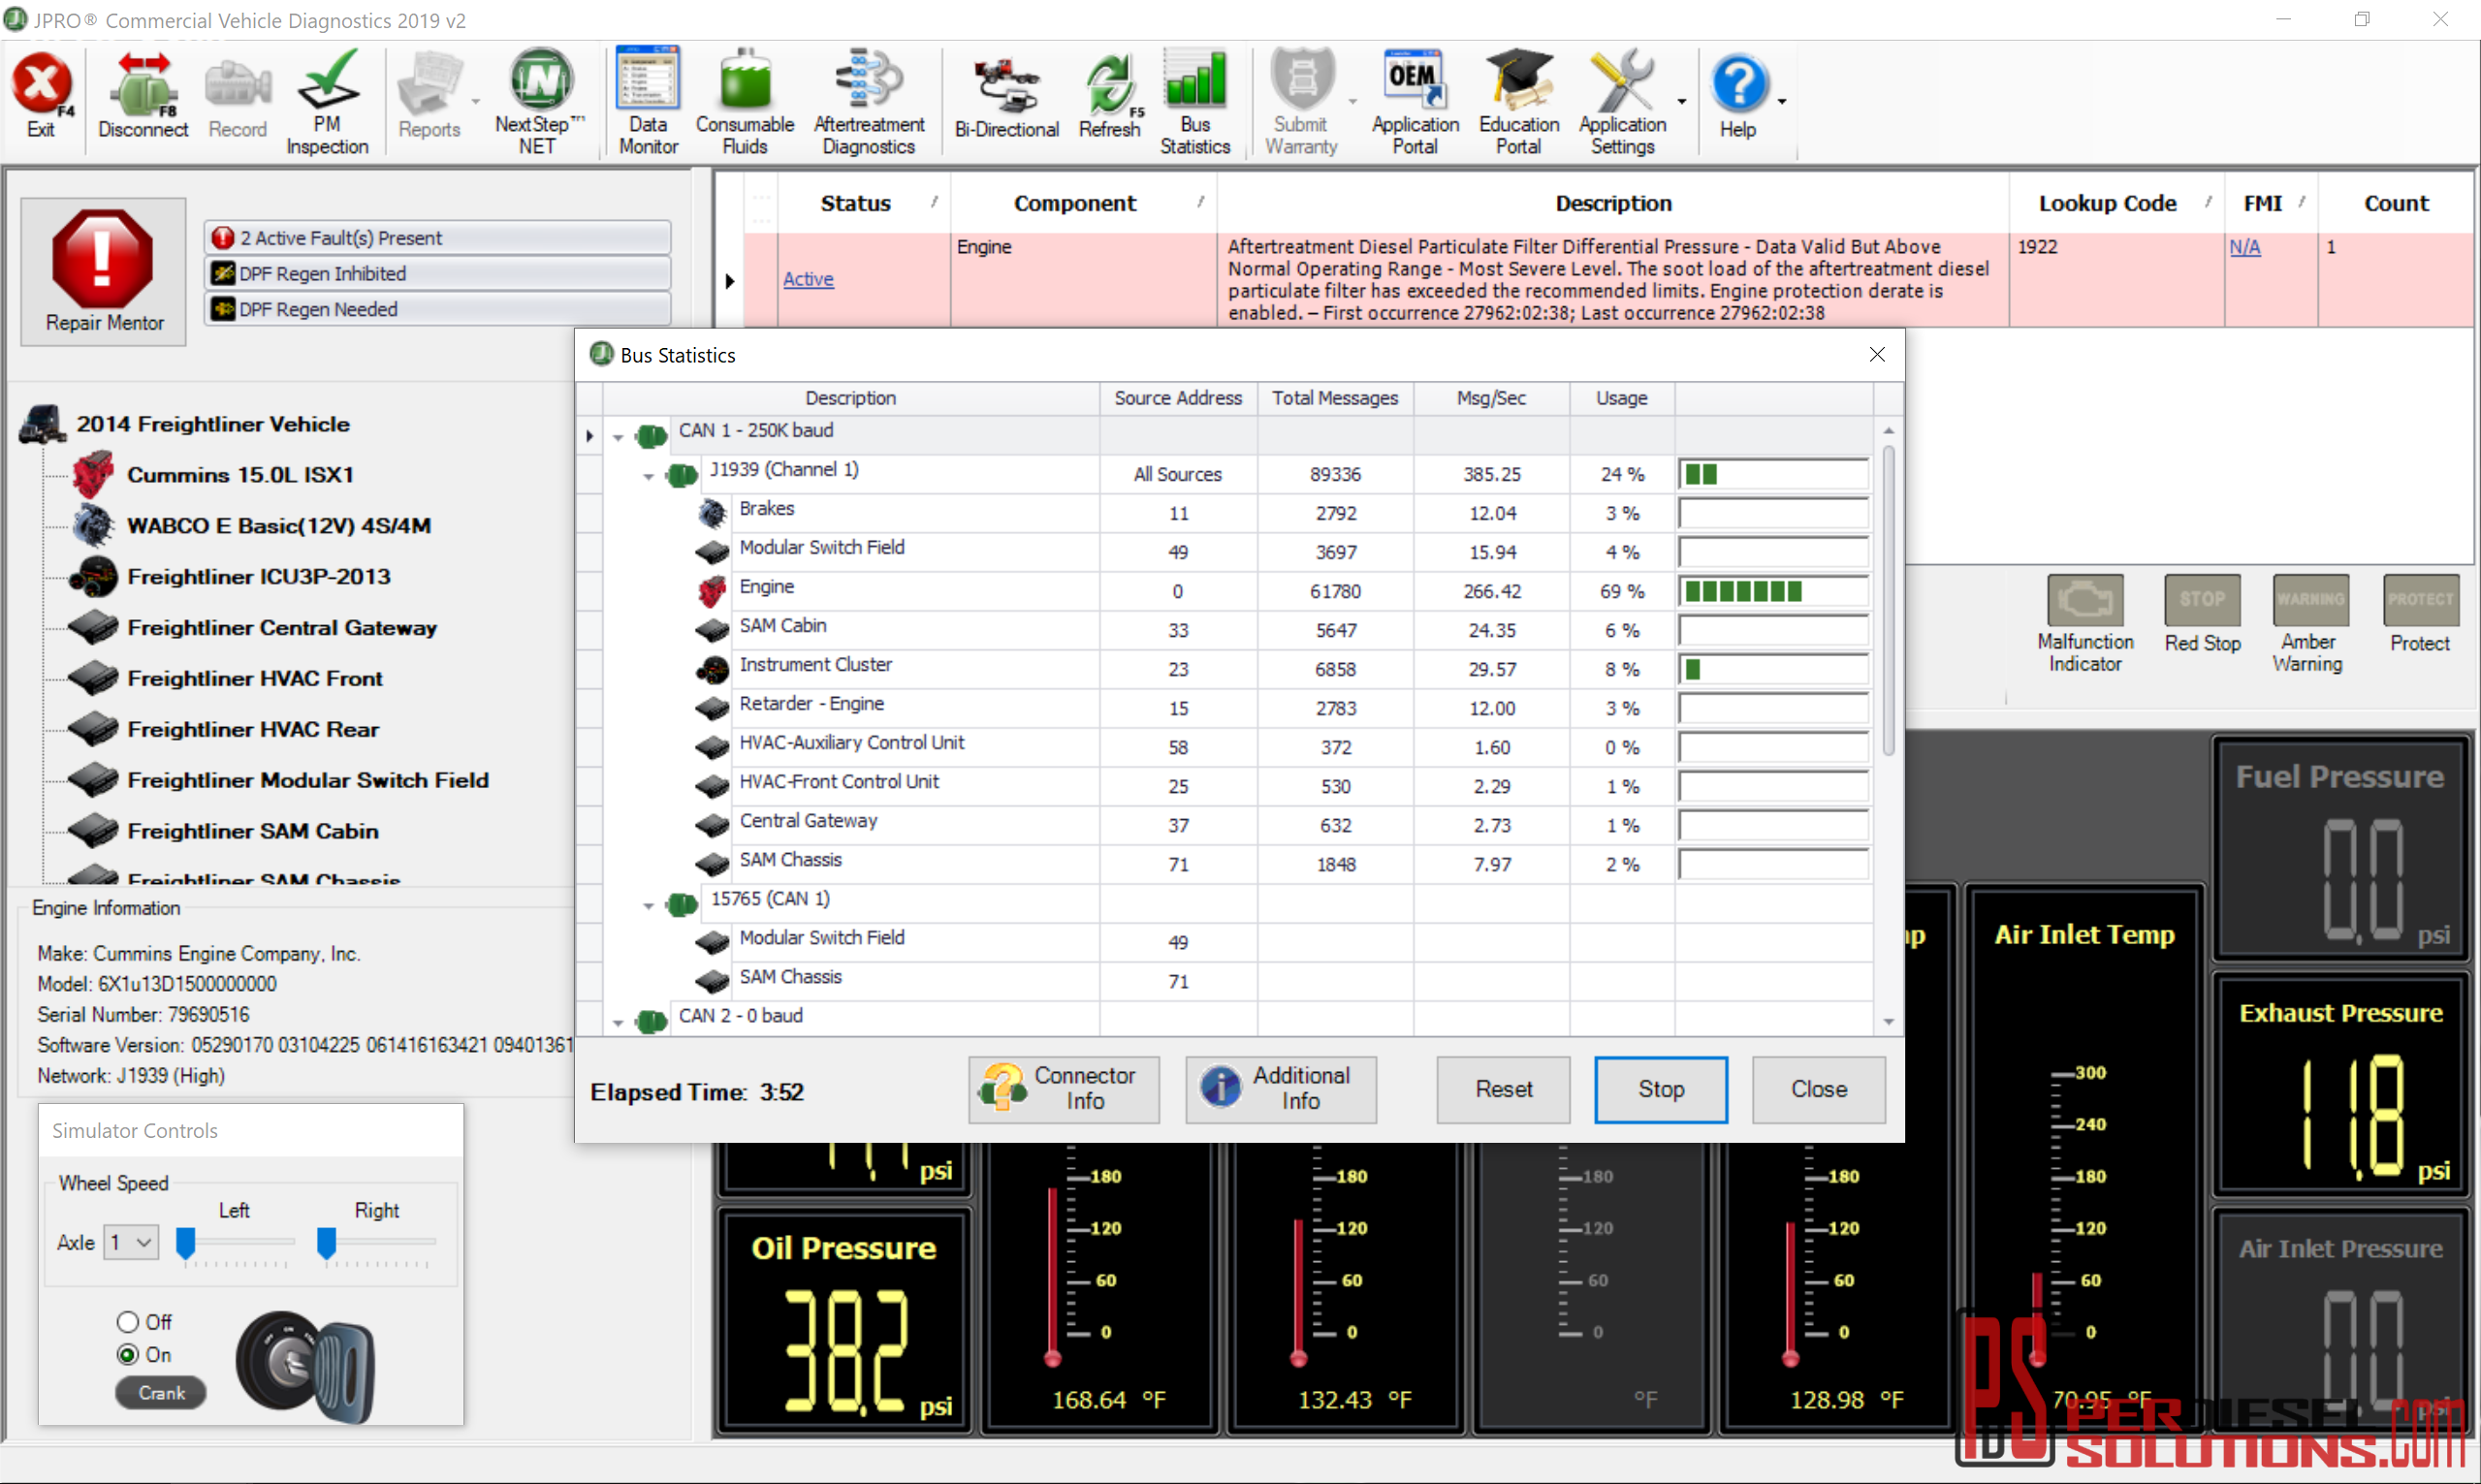 jpro fleet diagnostics download